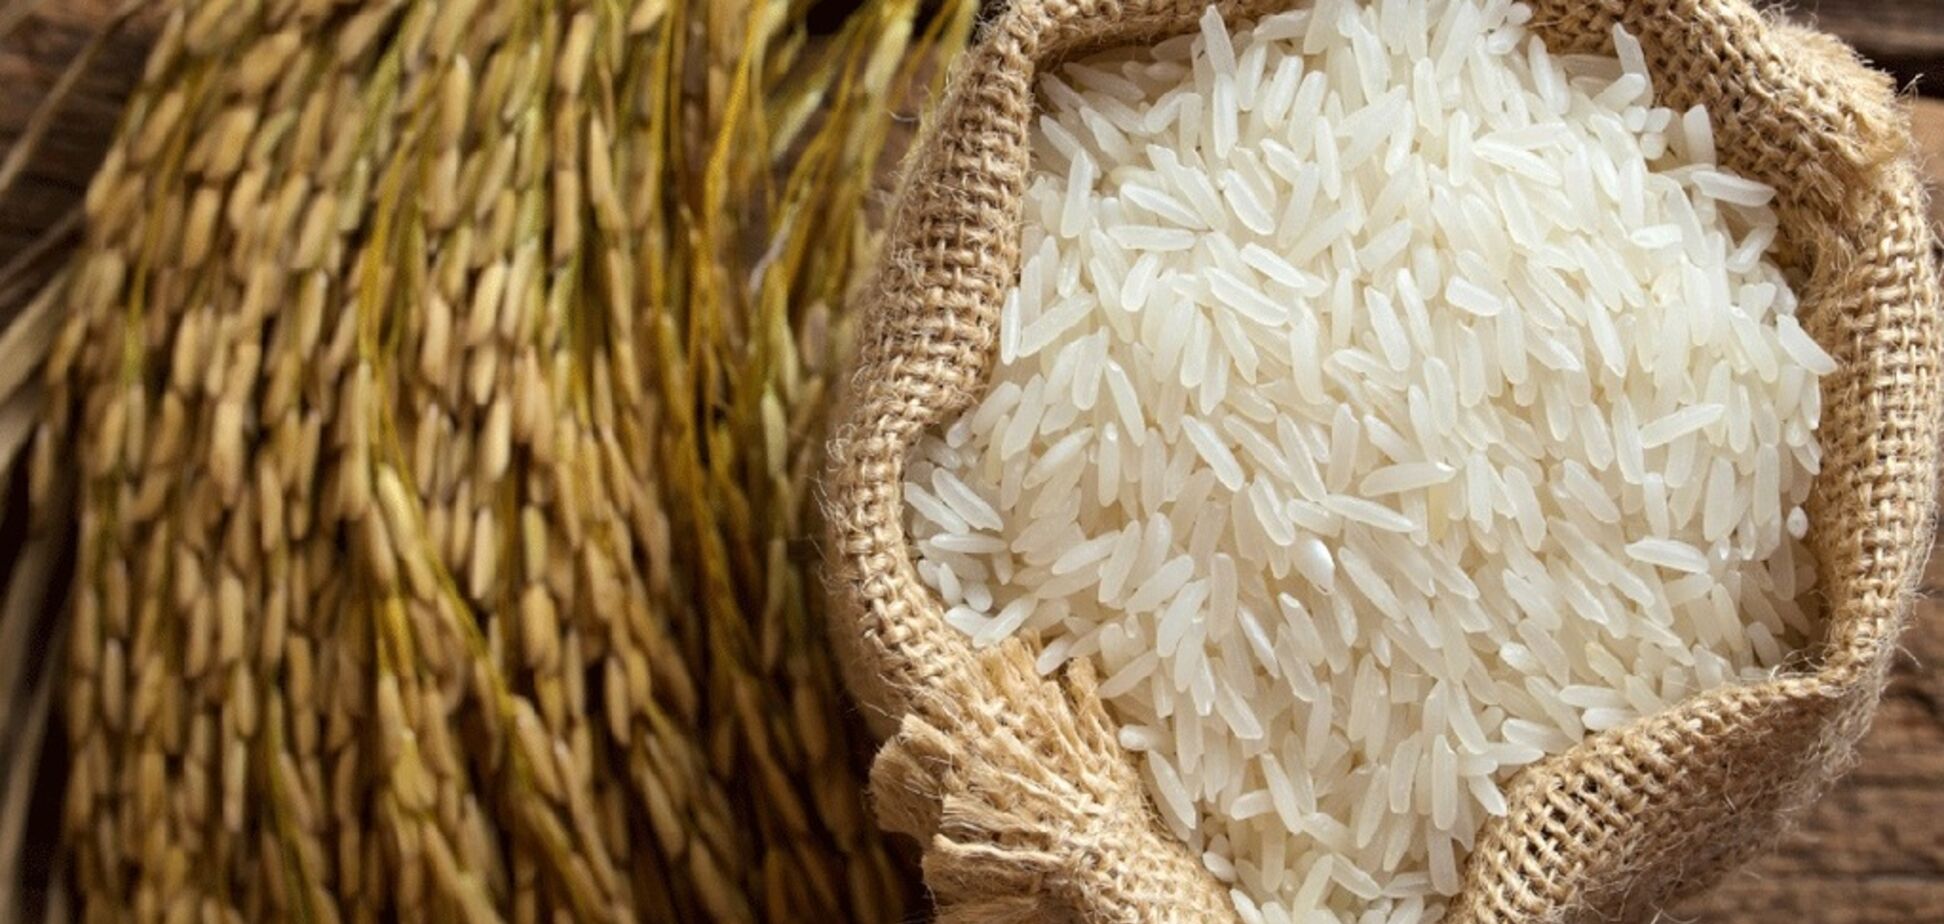 Помогает похудеть: развенчан популярный миф о пользе риса